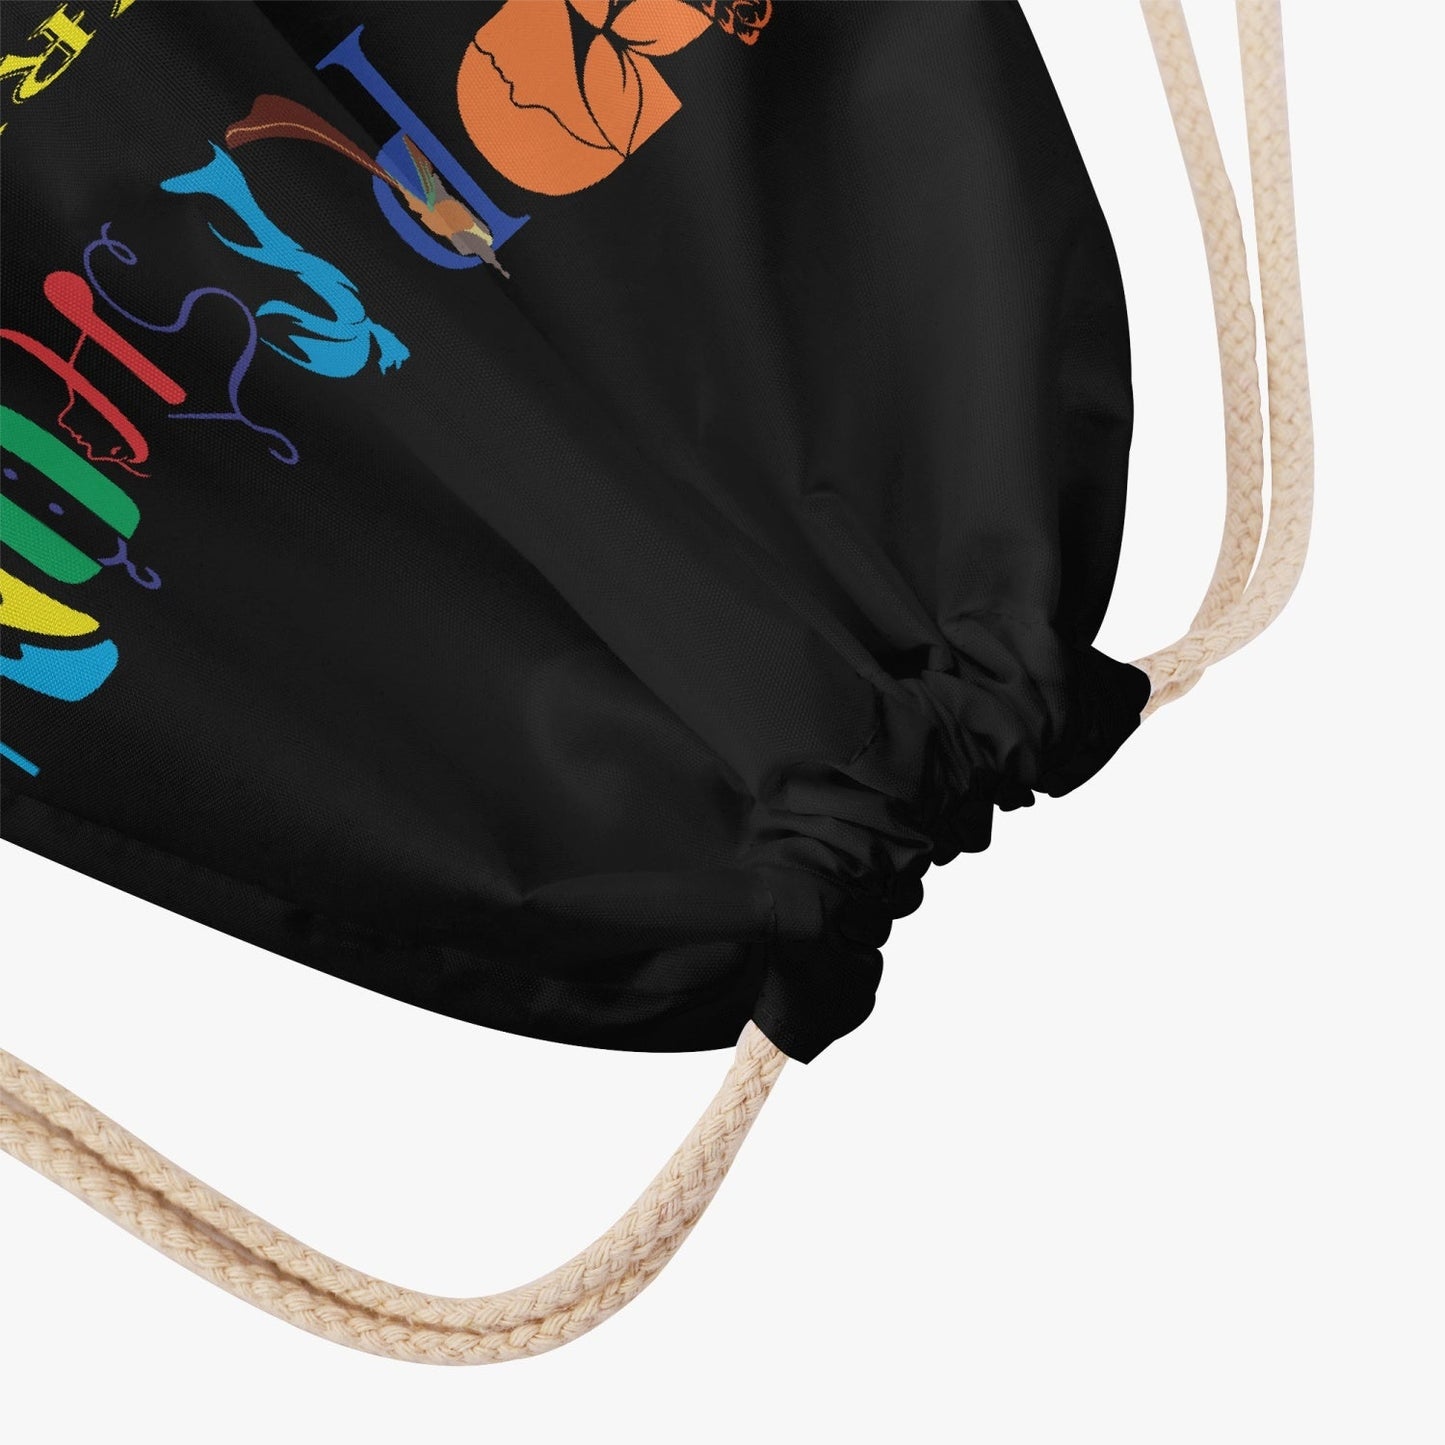 Xpreshun Polyester Drawstring Backpack - Xpreshun Fashions